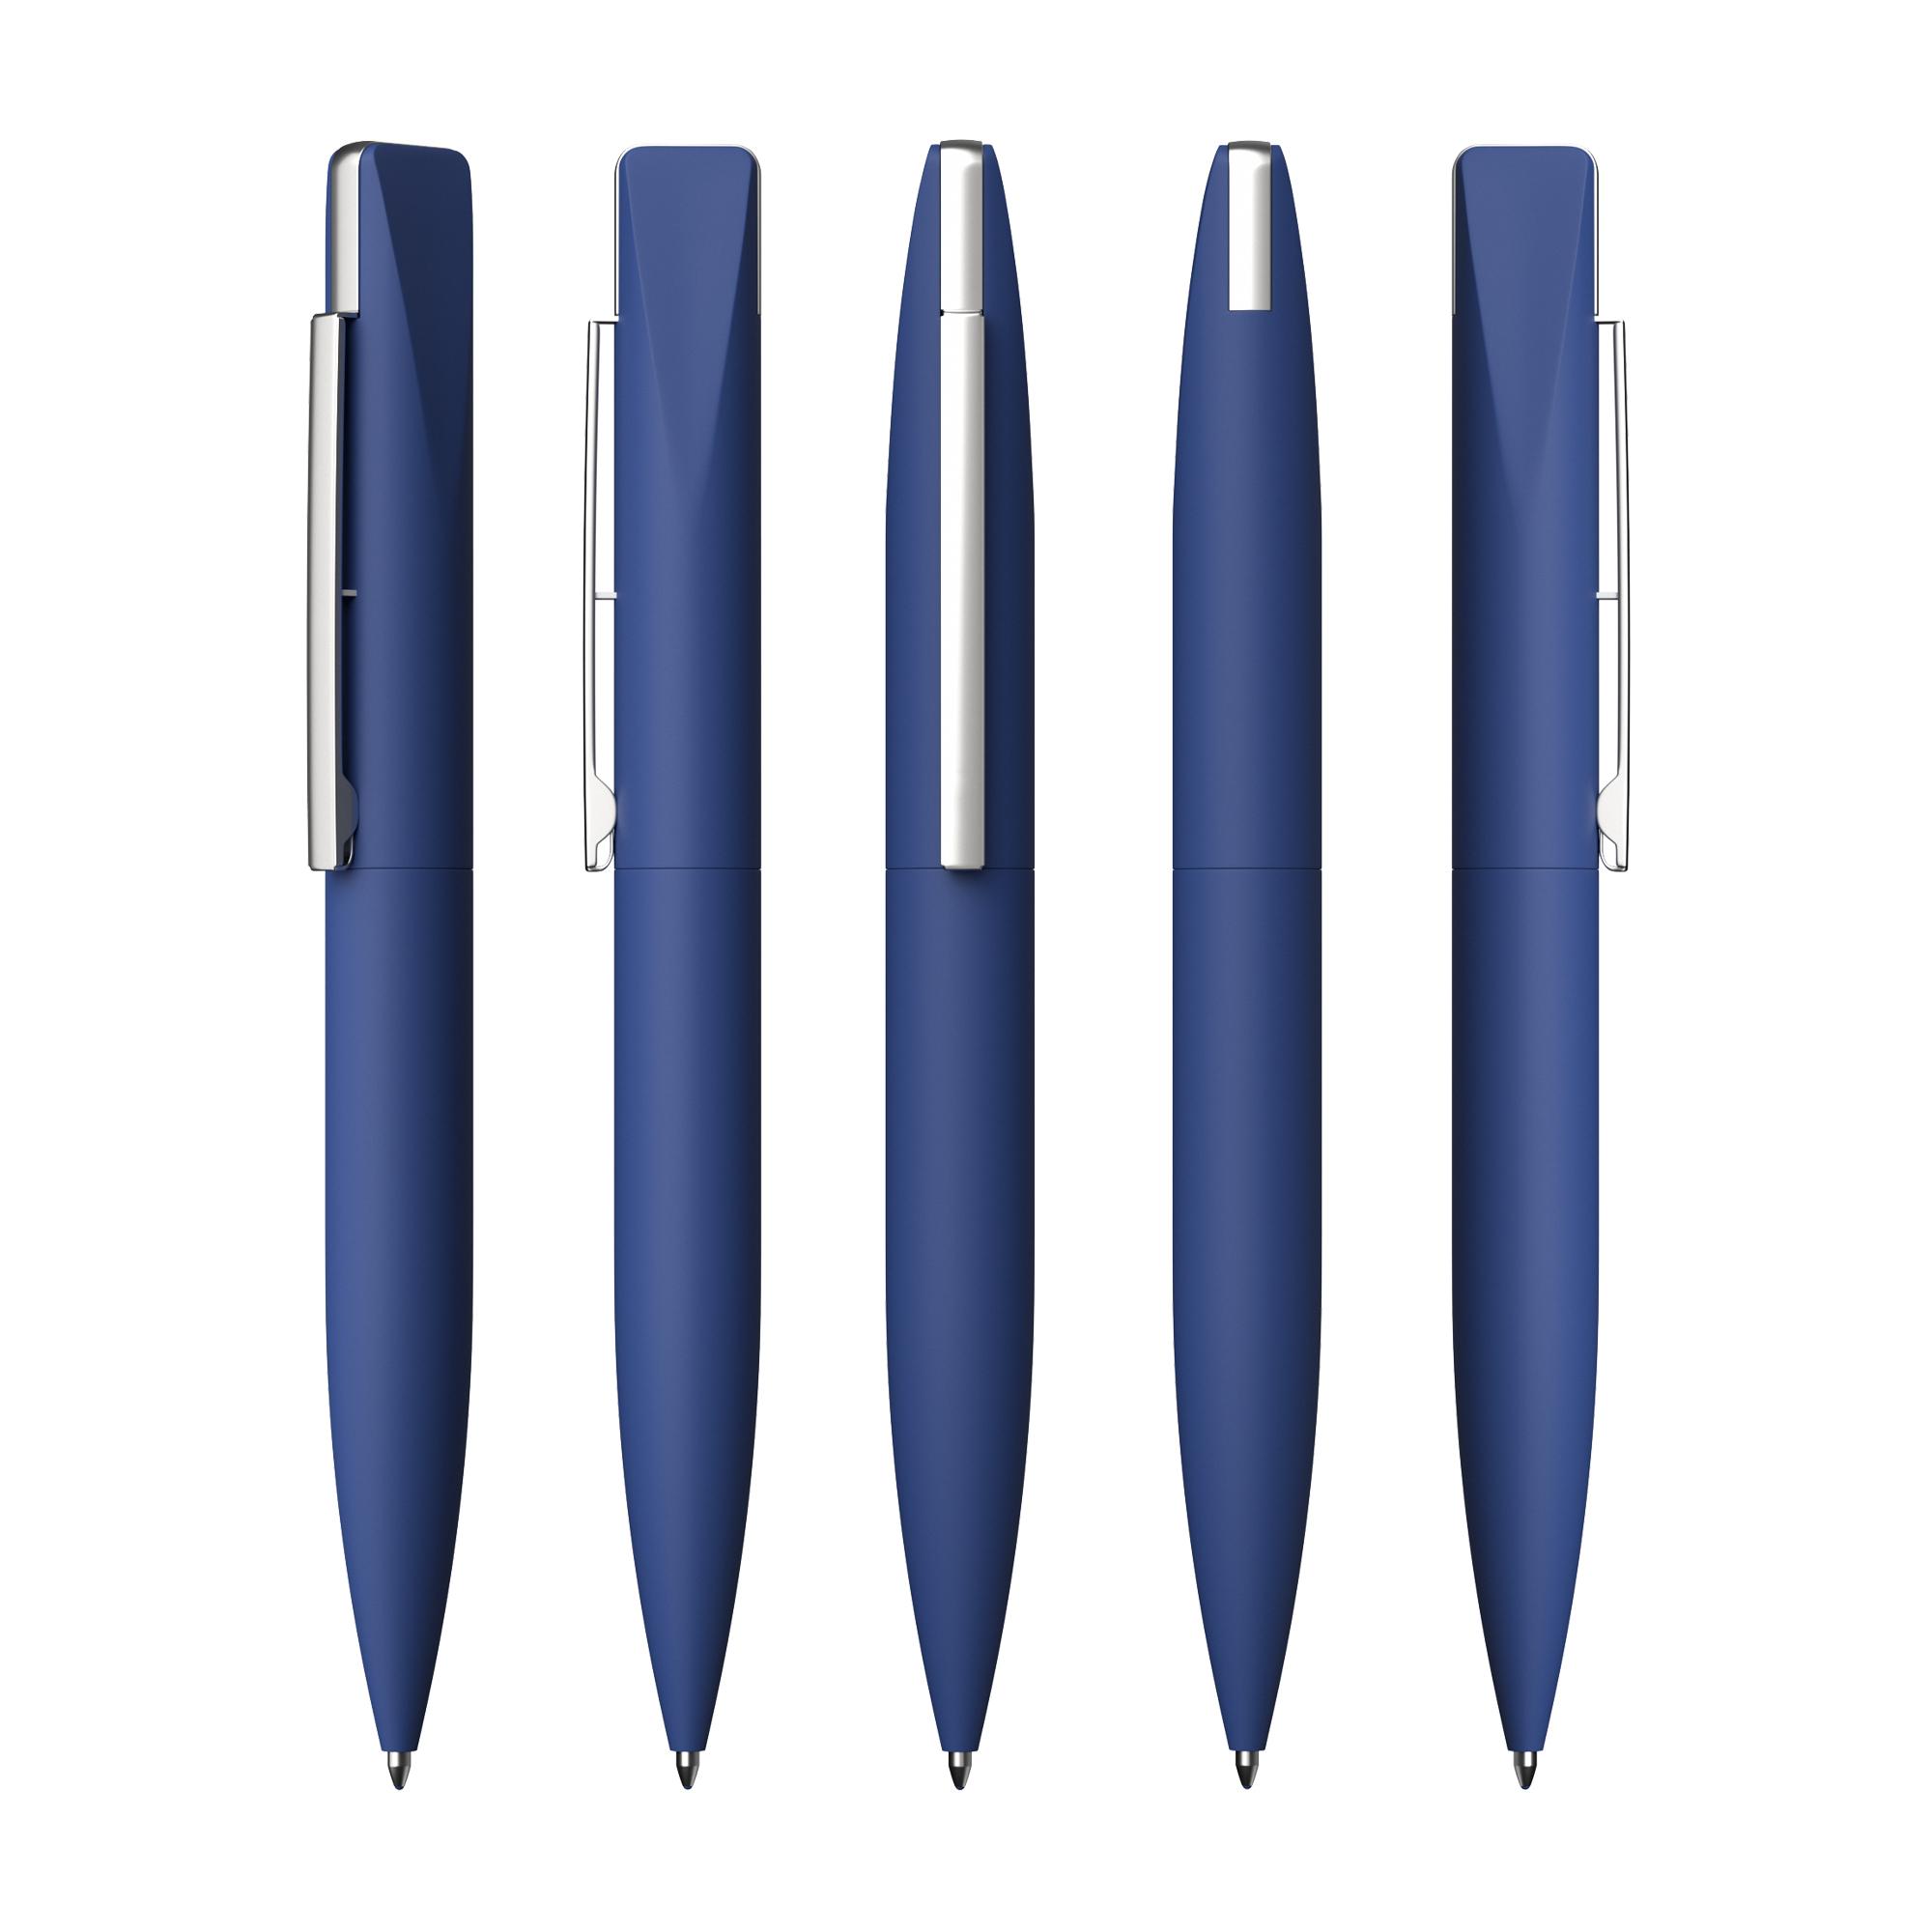 Ручка шариковая "Callisto" с флеш-картой 32Gb, покрытие soft touch, цвет темно-синий, фото 2